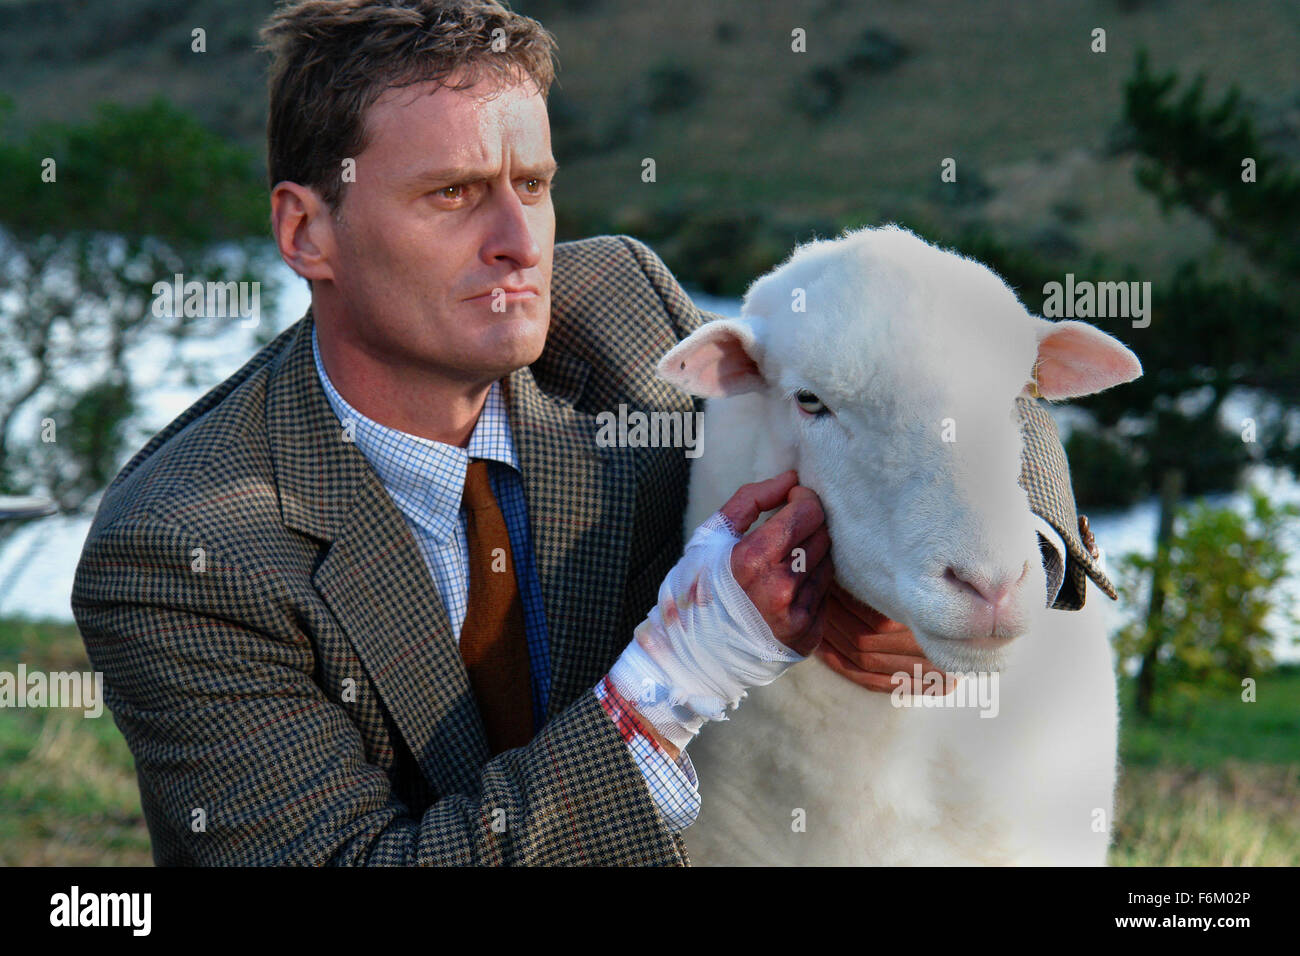 Fecha de publicación: junio de 2007. Película: ovejas negras. Estudio: Live Stock Films. Parcela: Un experimento en ingeniería genética resulta inocuo en ovejas sedientas de sangre asesinos que aterrorizan a una extensa finca de Nueva Zelandia. Foto de stock